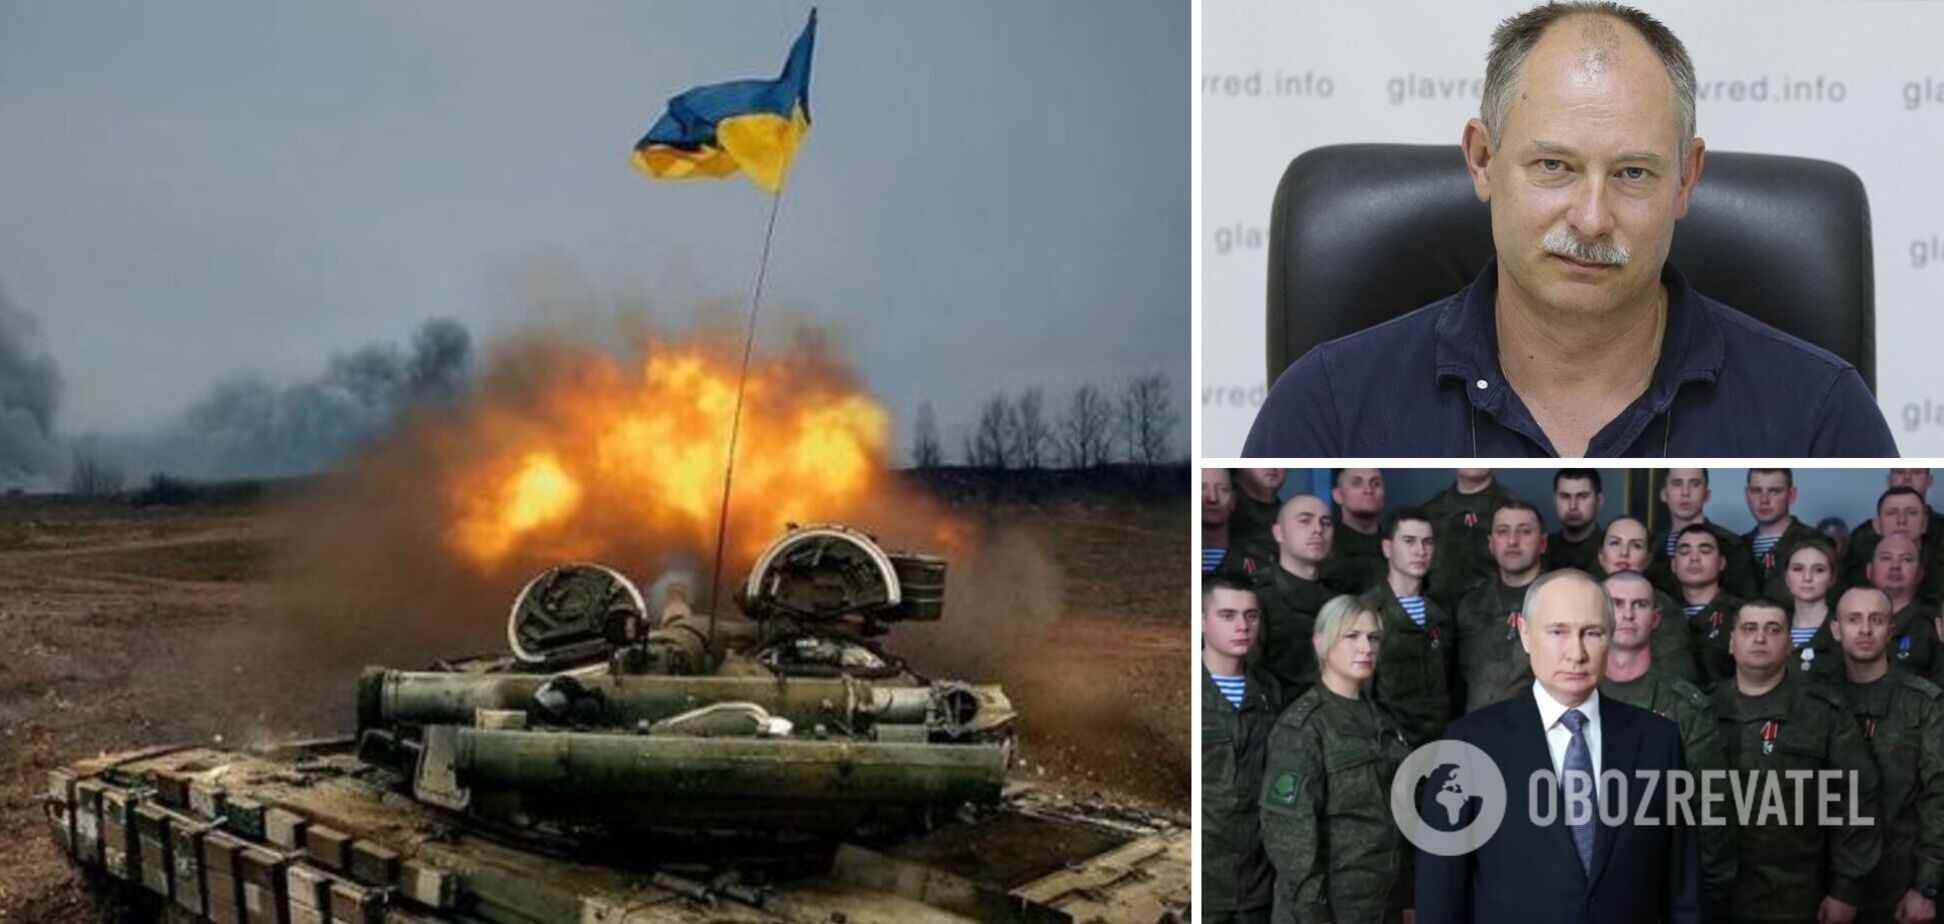 Жданов: ракетные войска РФ сдуваются, с мобилизацией проблемы. Каков план Путина на второй год войны? Интервью